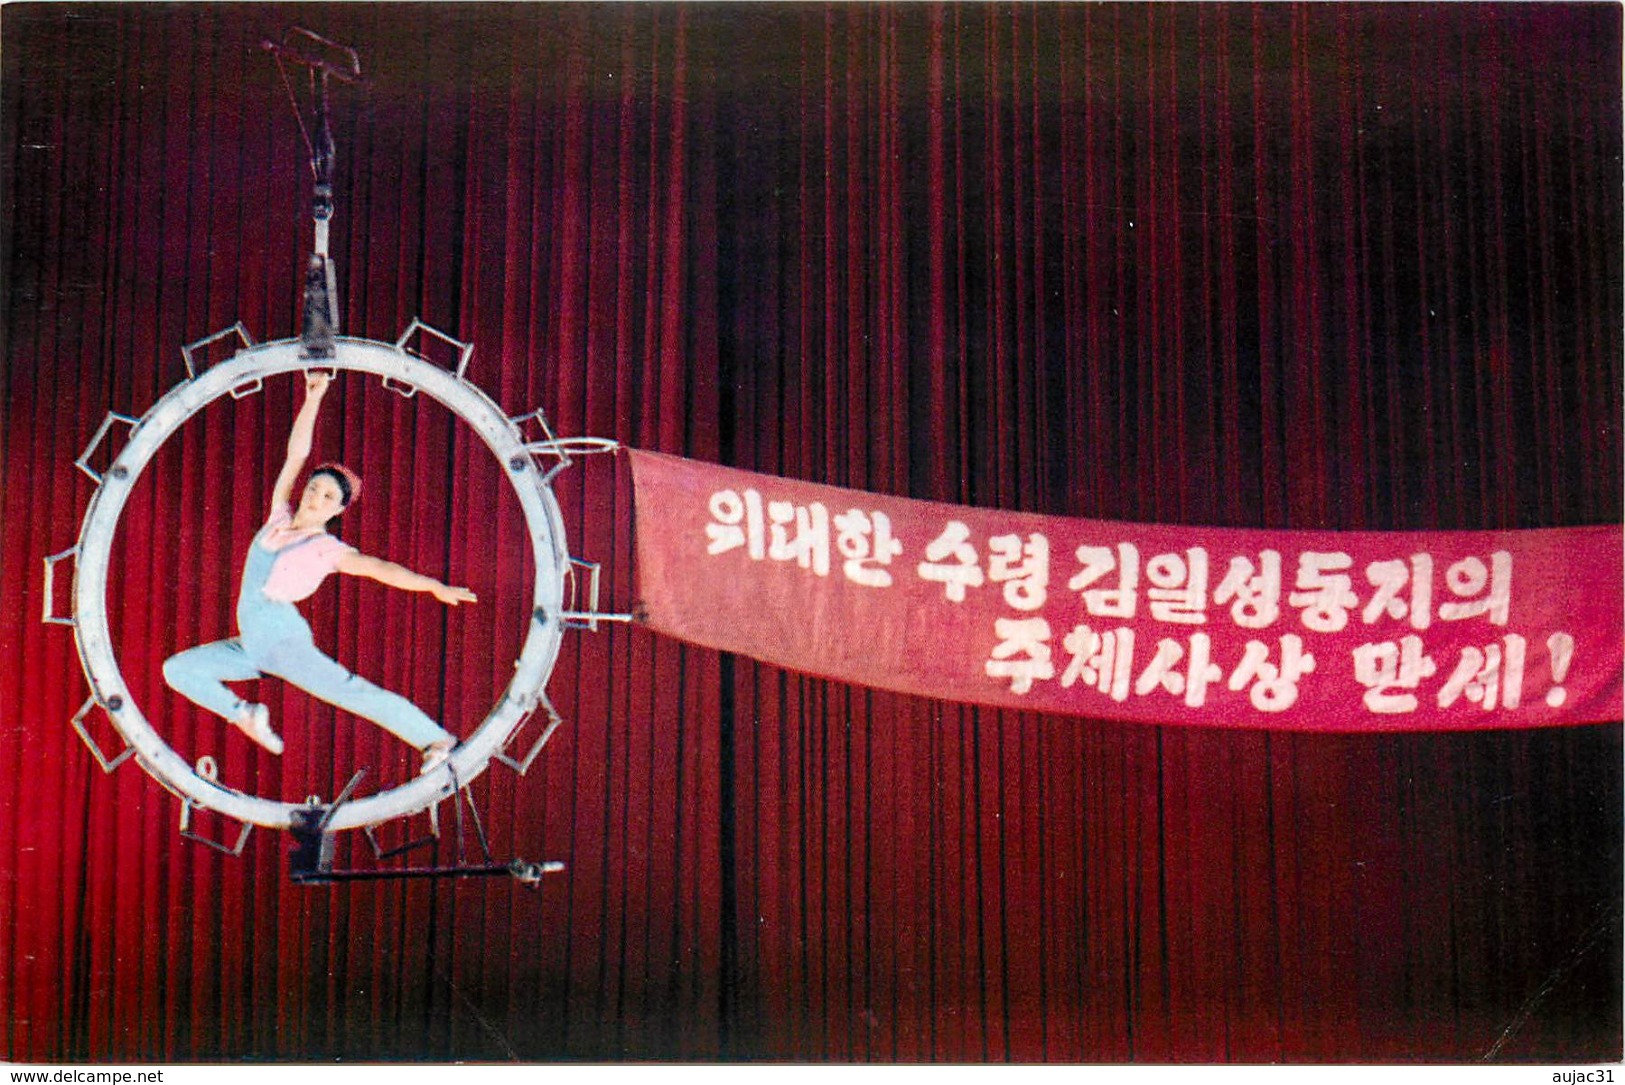 Corée du Nord - Spectacle - Cirques - Pyongyang - 16 cartes avec pochette sur le cirque - Semi moderne grand format